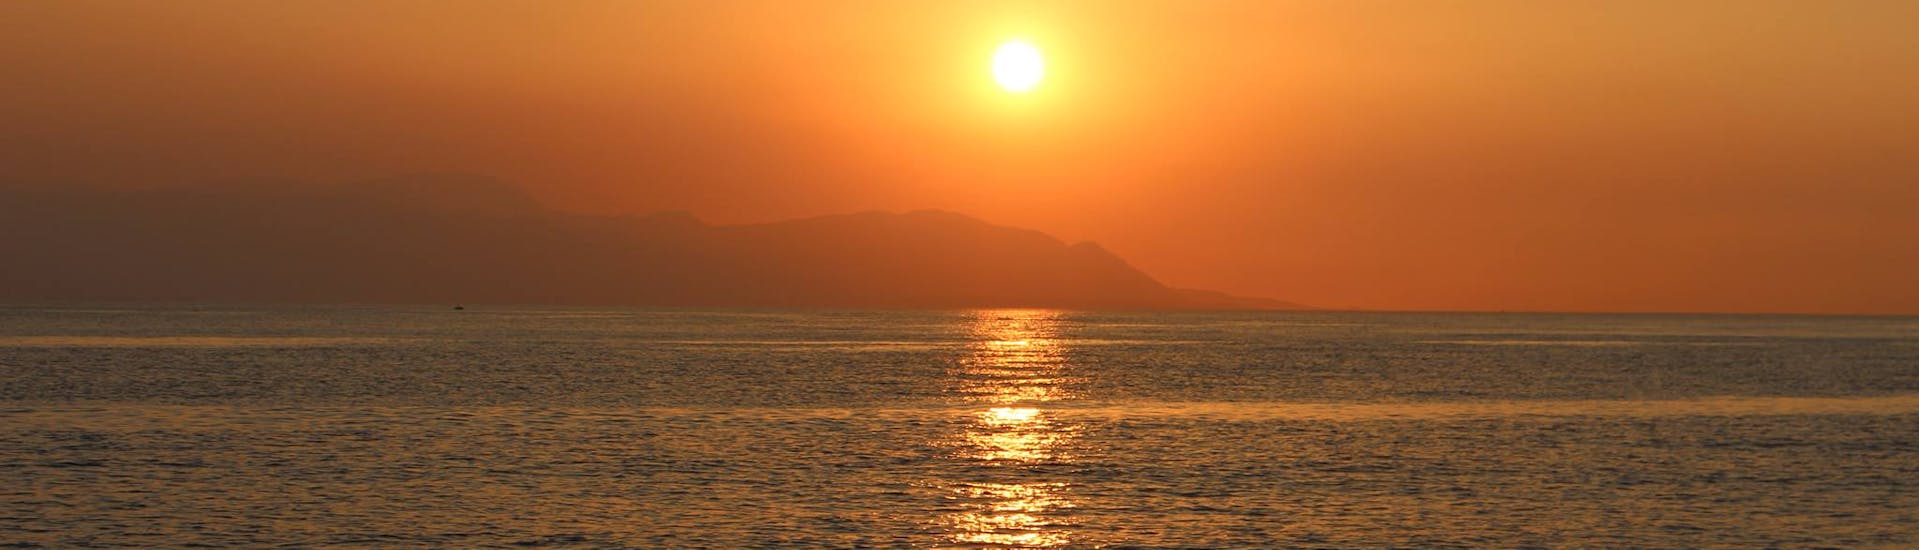 Vue du coucher de soleil depuis le bateau pendant la balade en bateau depuis Athènes avec dîner et snorkeling.